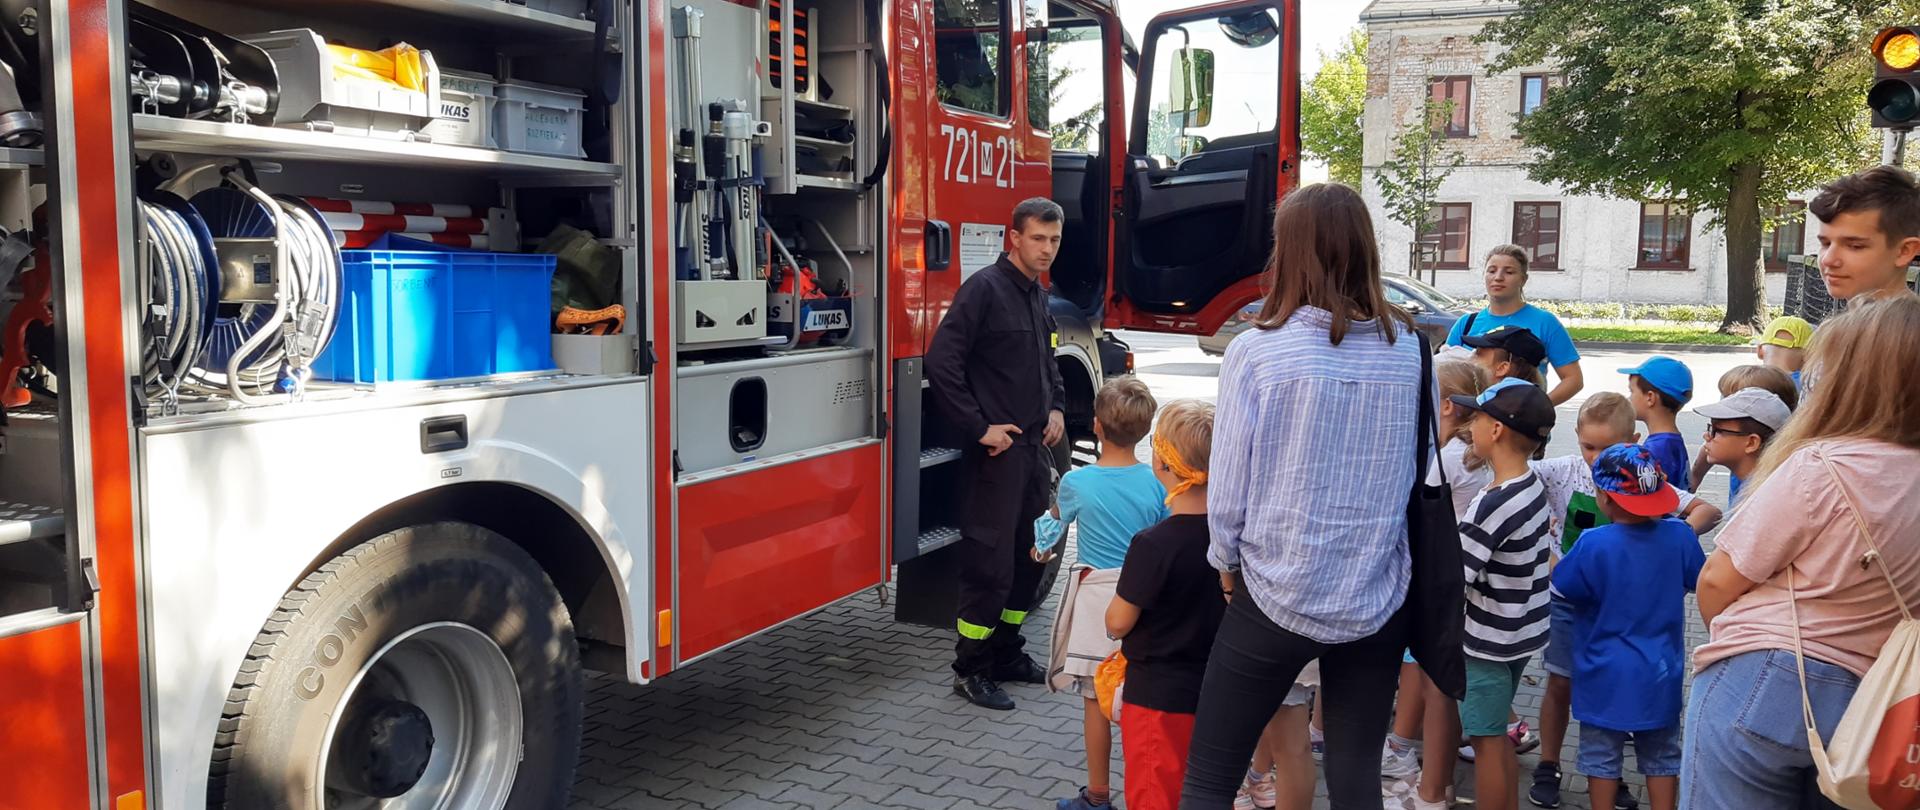 Grupa dzieci wraz z opiekunami stoi na dworze przy samochodzie strażackim. Strażak pokazuje im wyposażenie samochodu.